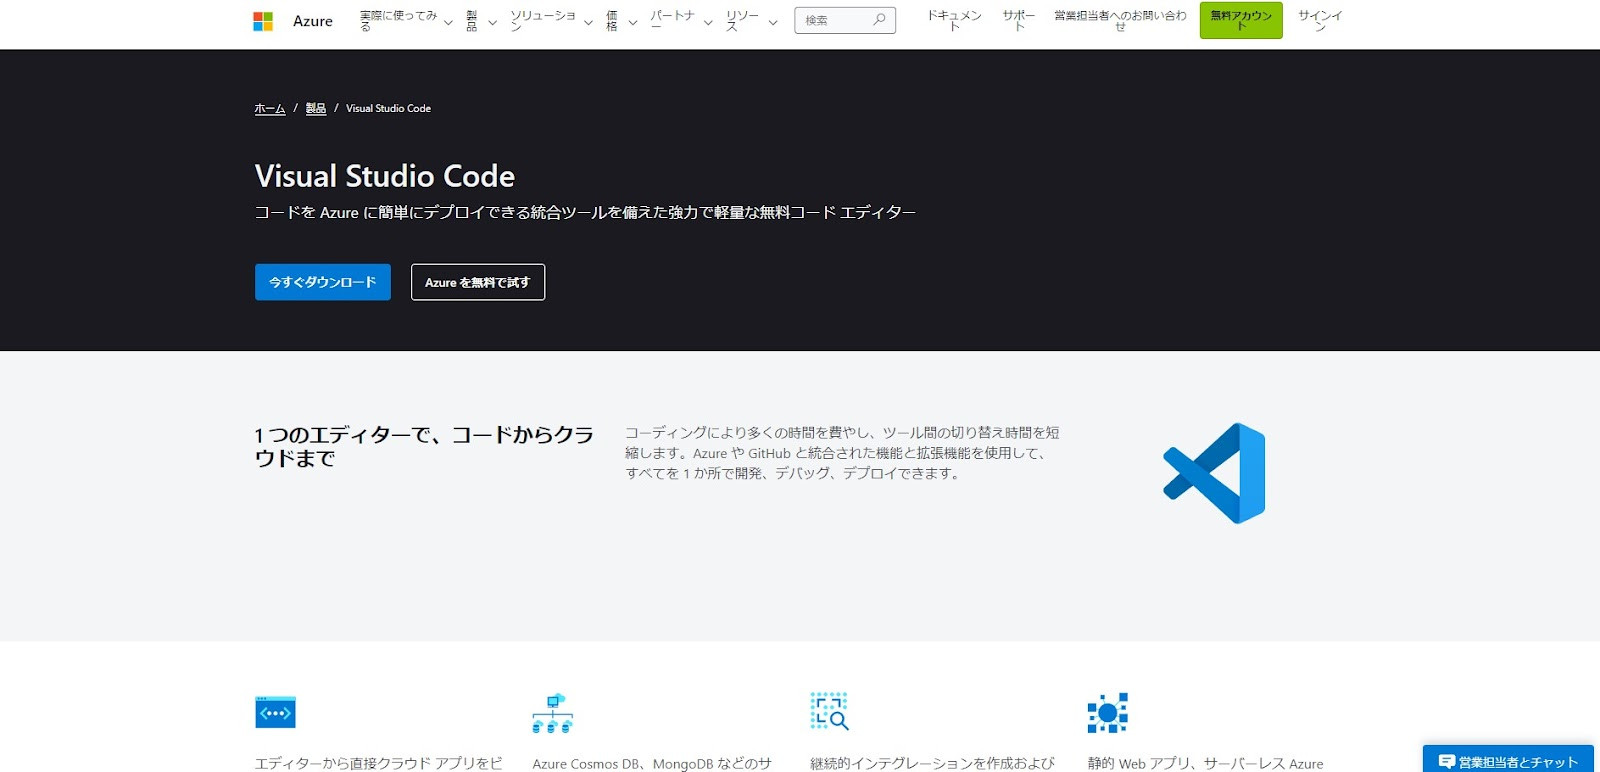 Azure Visual Studio Code